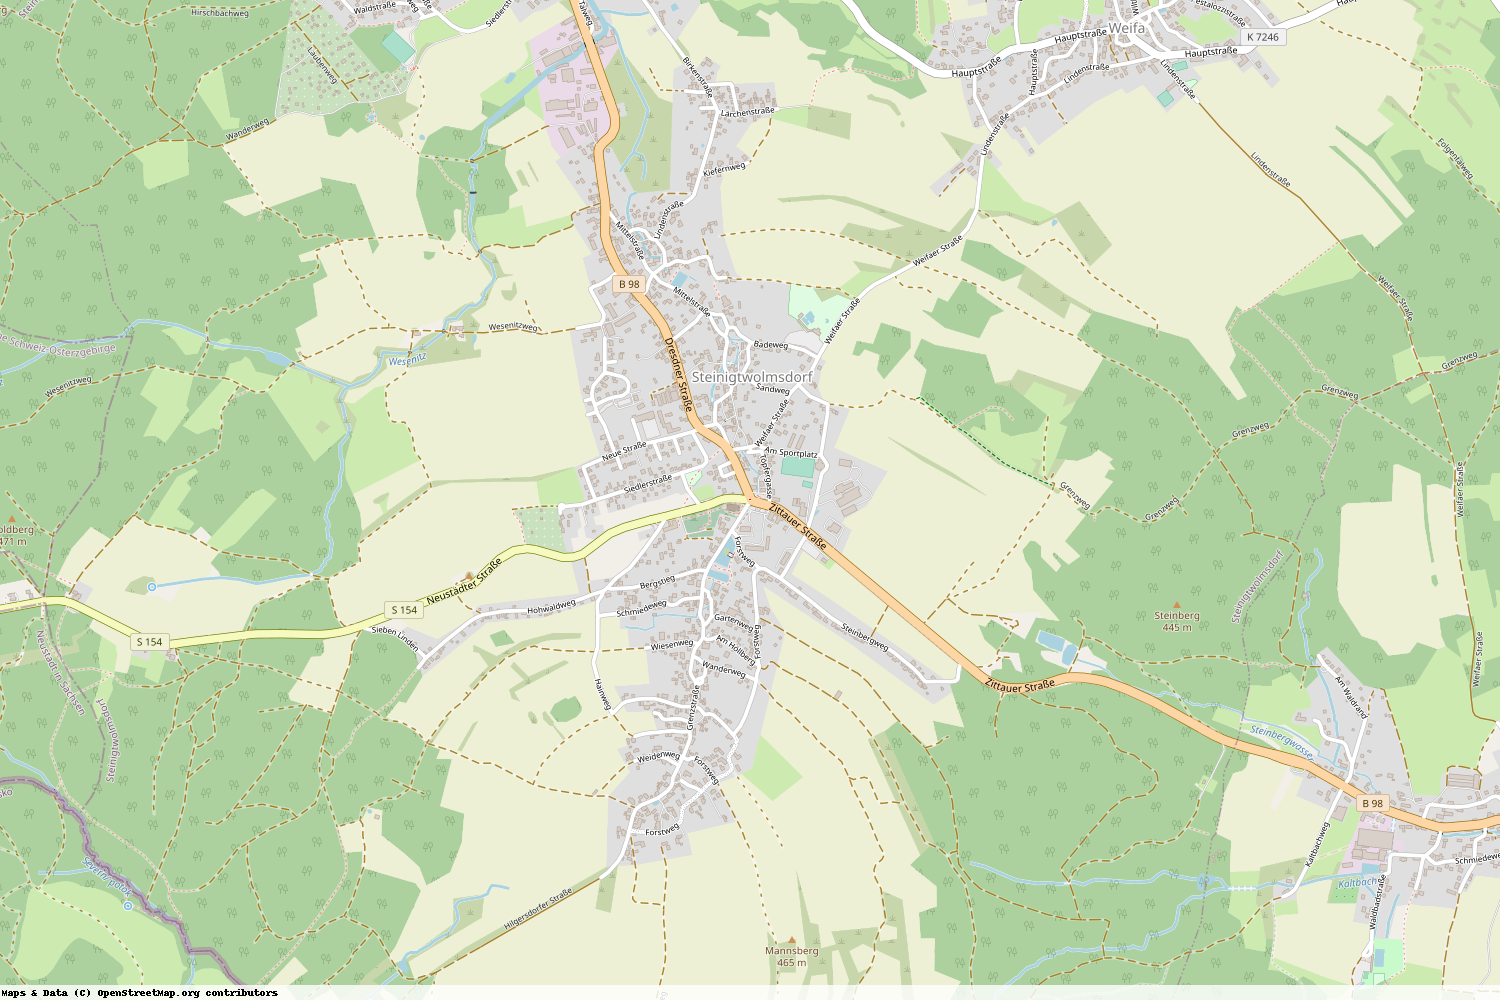 Ist gerade Stromausfall in Sachsen - Bautzen - Steinigtwolmsdorf?